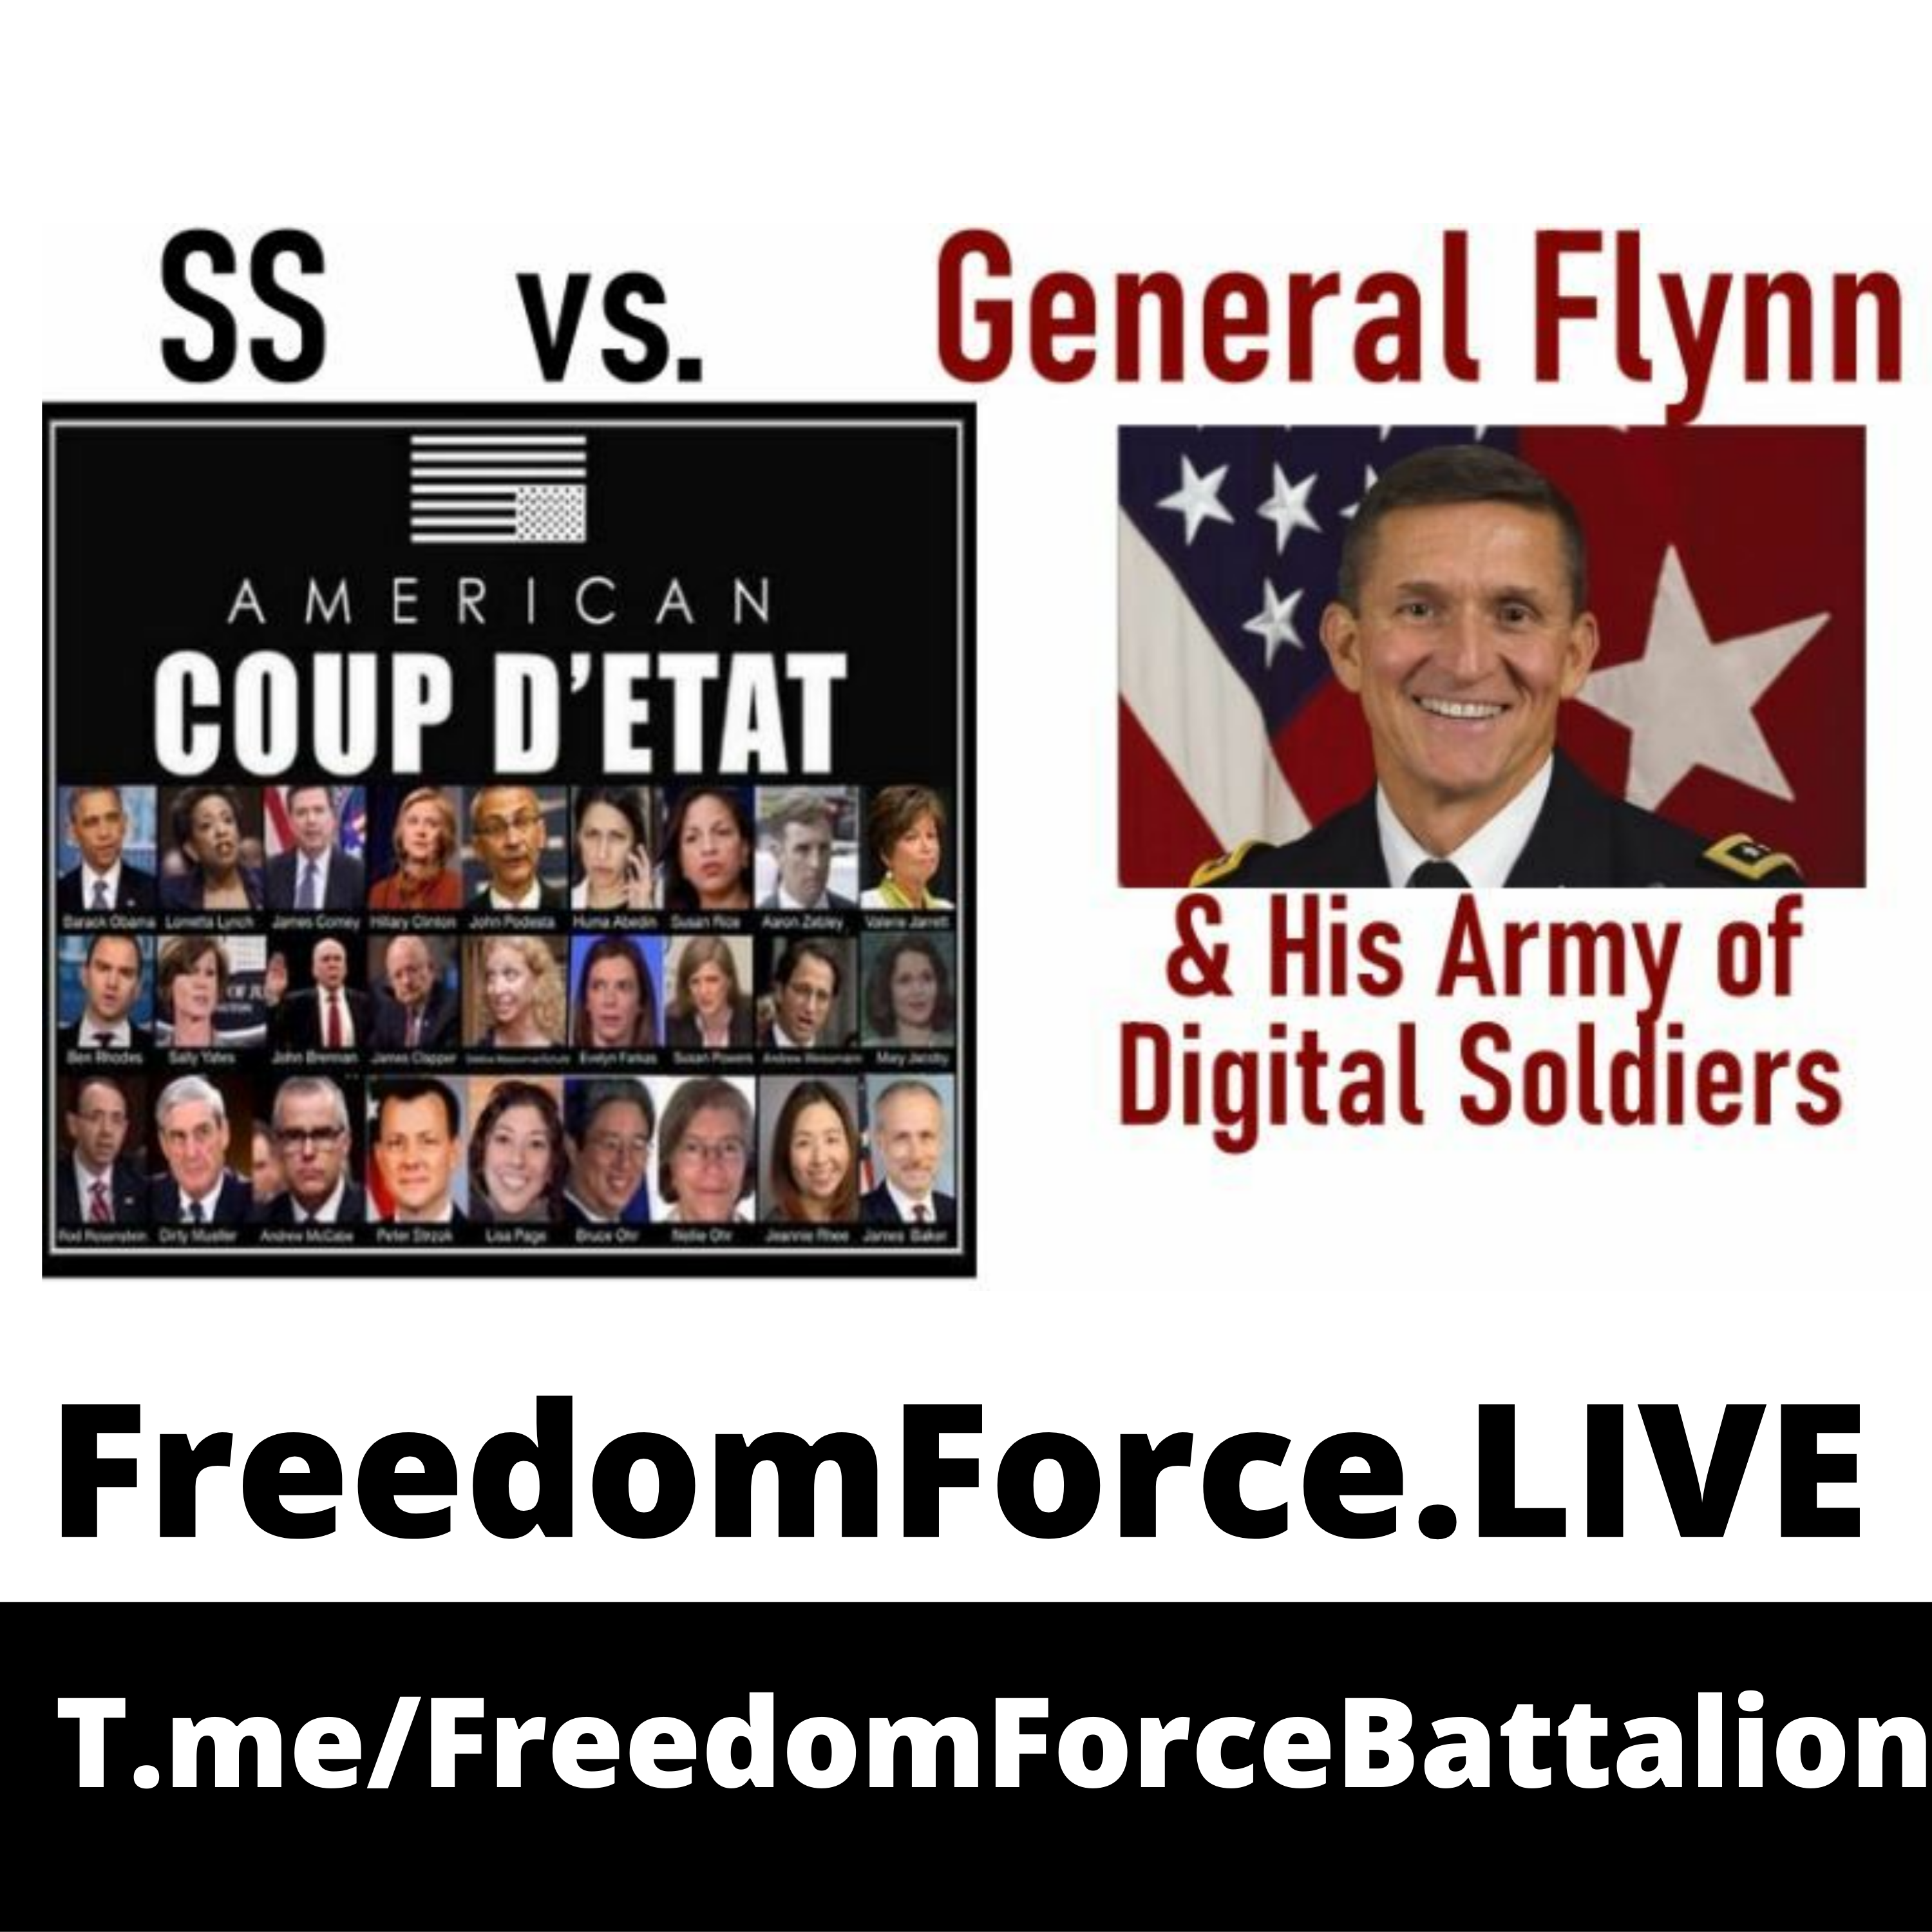 SS VS General Flynn